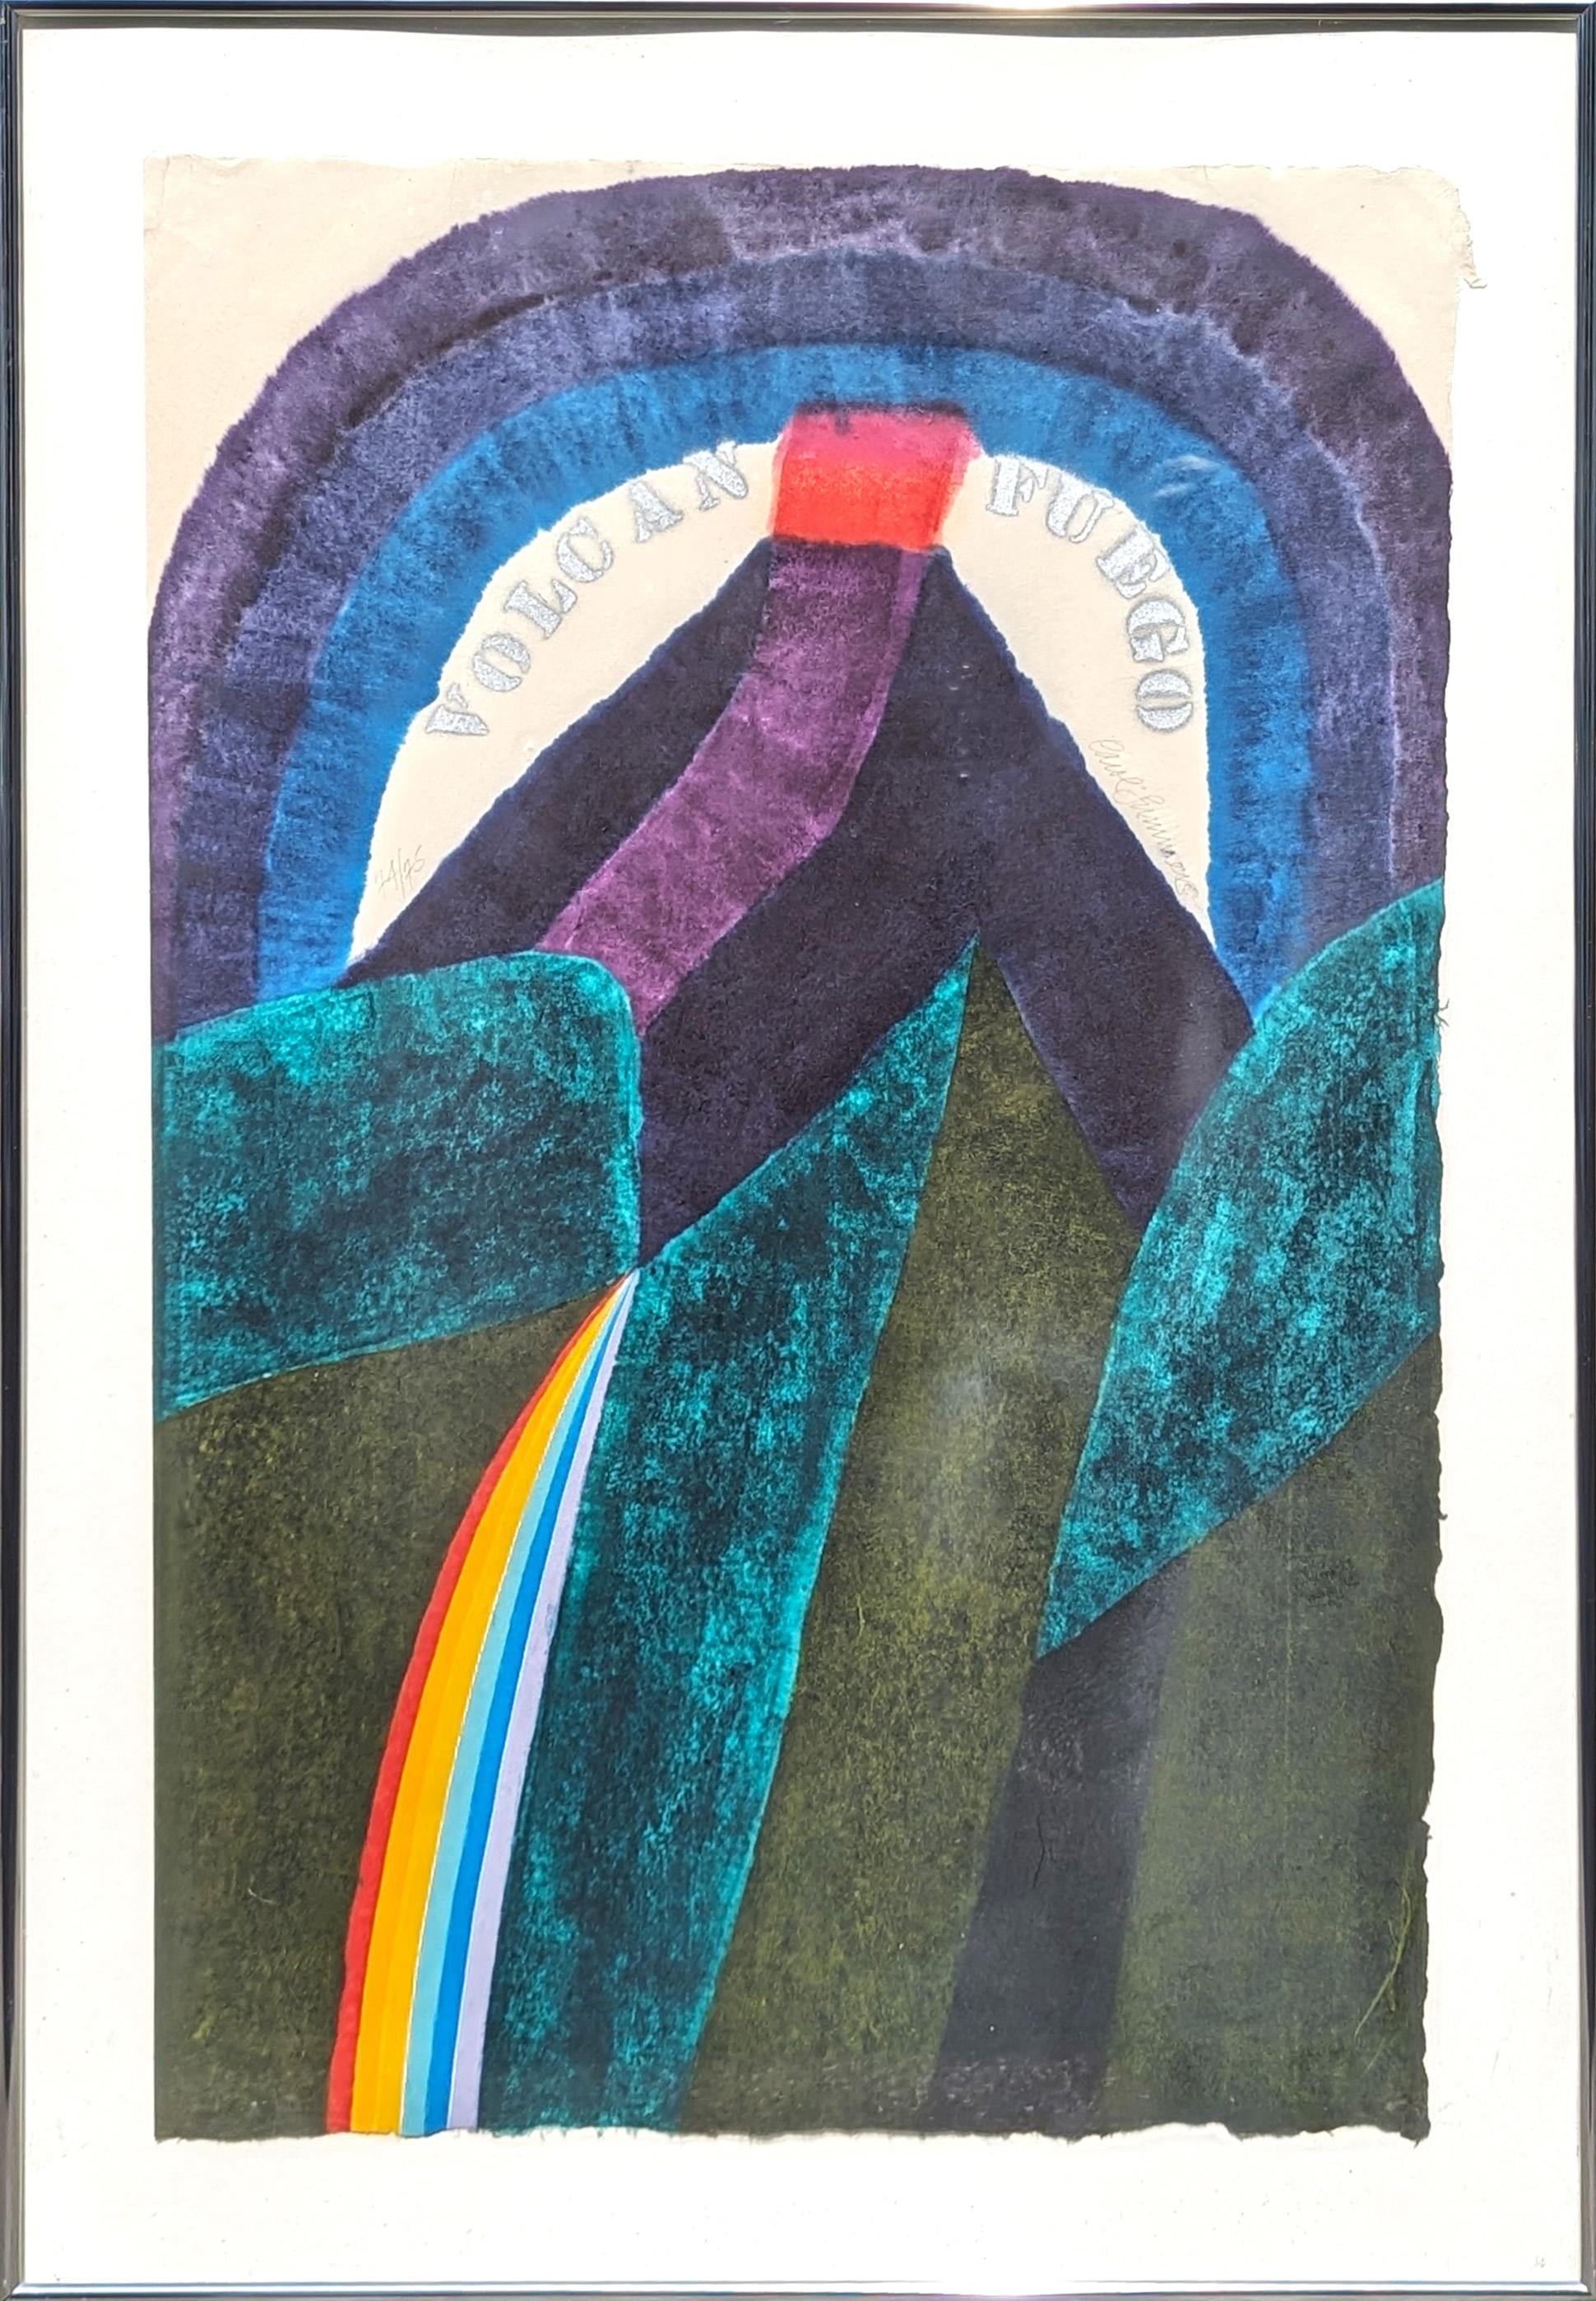 Volcano Fuego - Paysage abstrait coloré moderne - Impression sur bois - Ed. 74/75